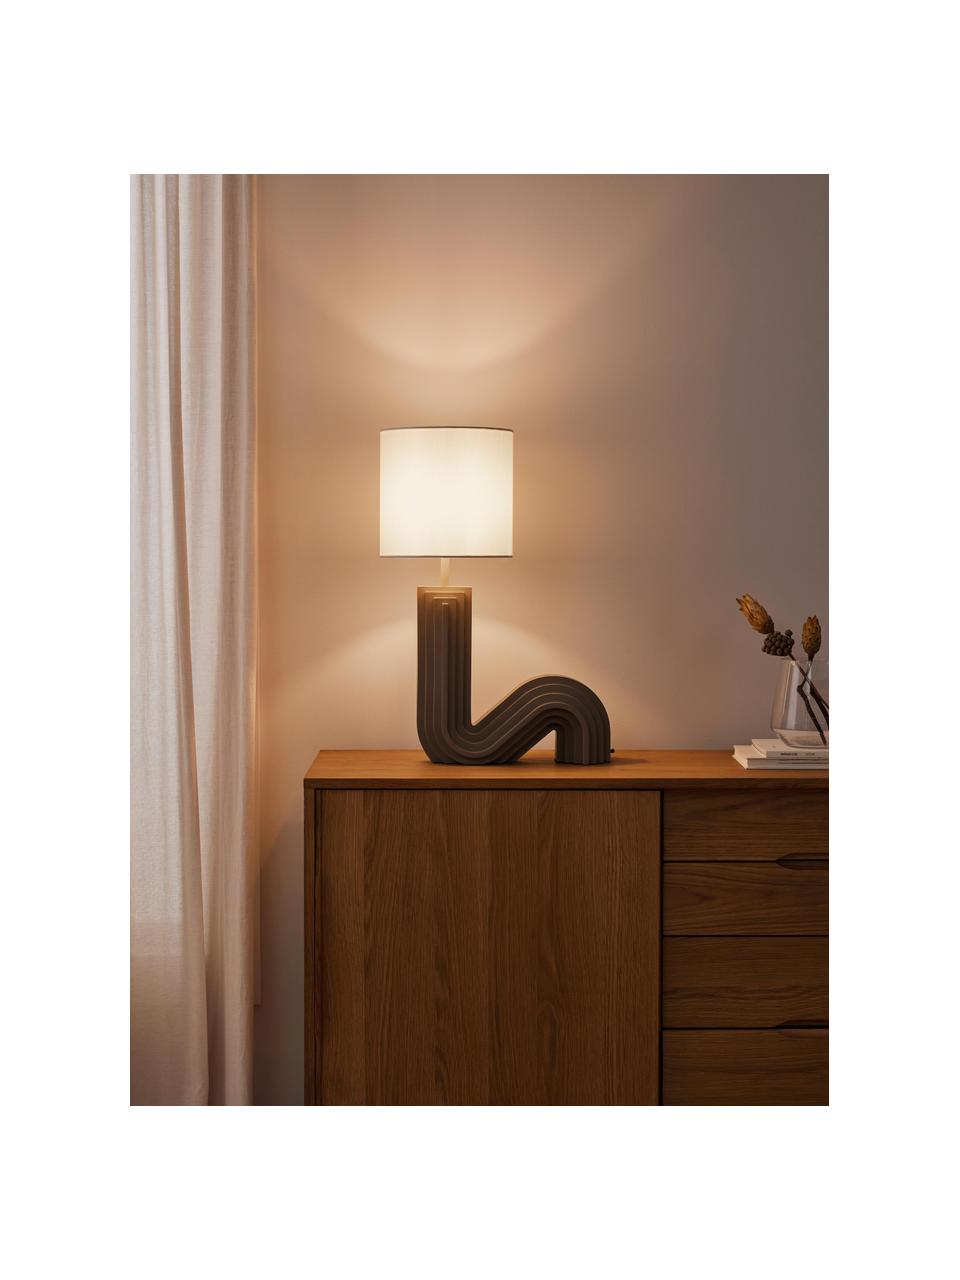 Design Tischlampe Luomo, Lampenschirm: Leinenstoff, Lampenfuß: Harz, lackiert, Off White, Greige, B 43 x H 61 cm